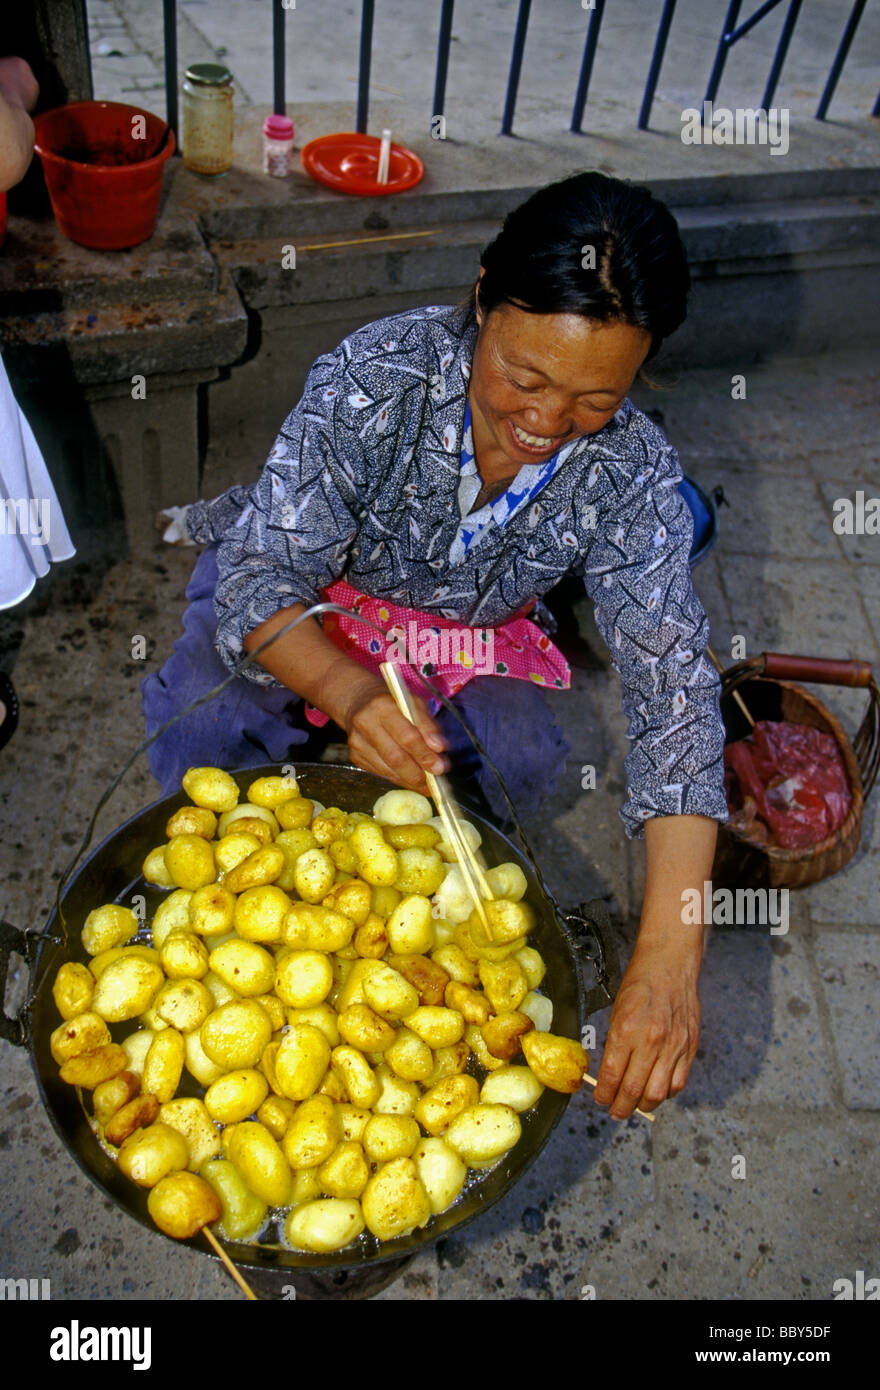 1, l'un, femme chinoise, femme adulte, de l'alimentation, de l'alimentation du vendeur vendeur, vendeur de rue, la vente des pommes de terre sautées, frites, Kunming, Province du Yunnan, Chine Banque D'Images